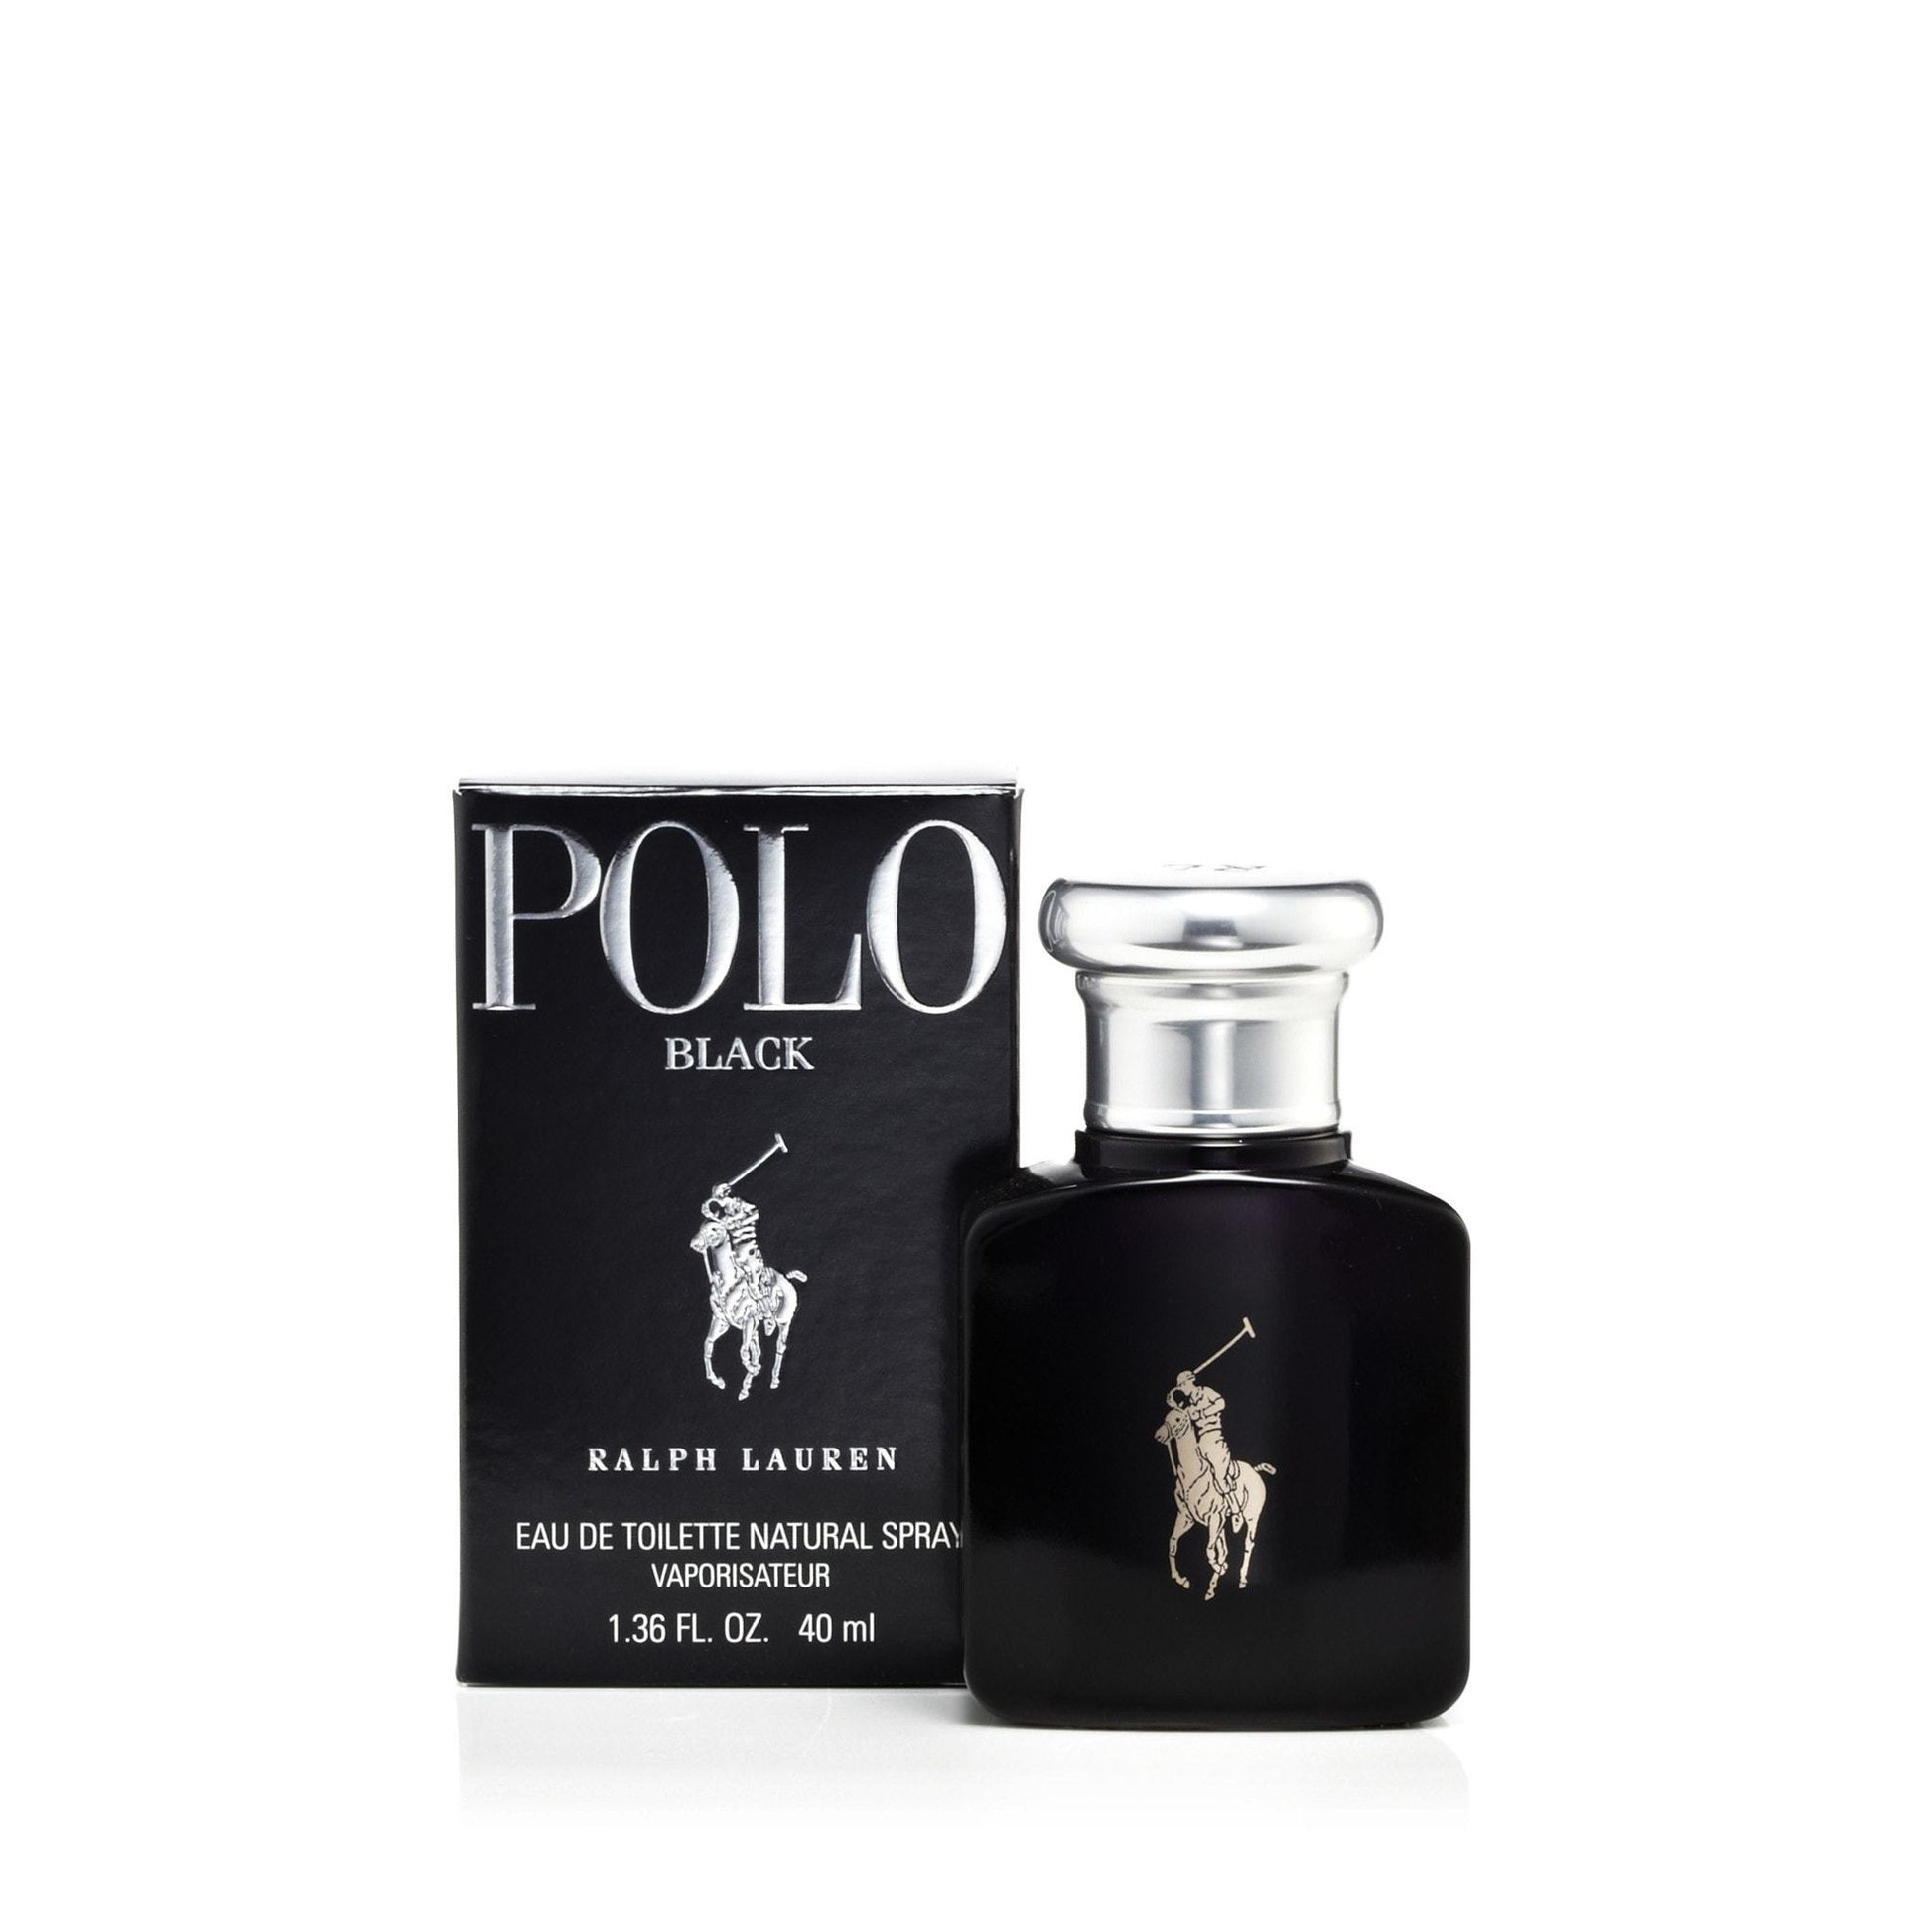 Polo Black Eau de Toilette Spray for Men by Ralph Lauren, Product image 7